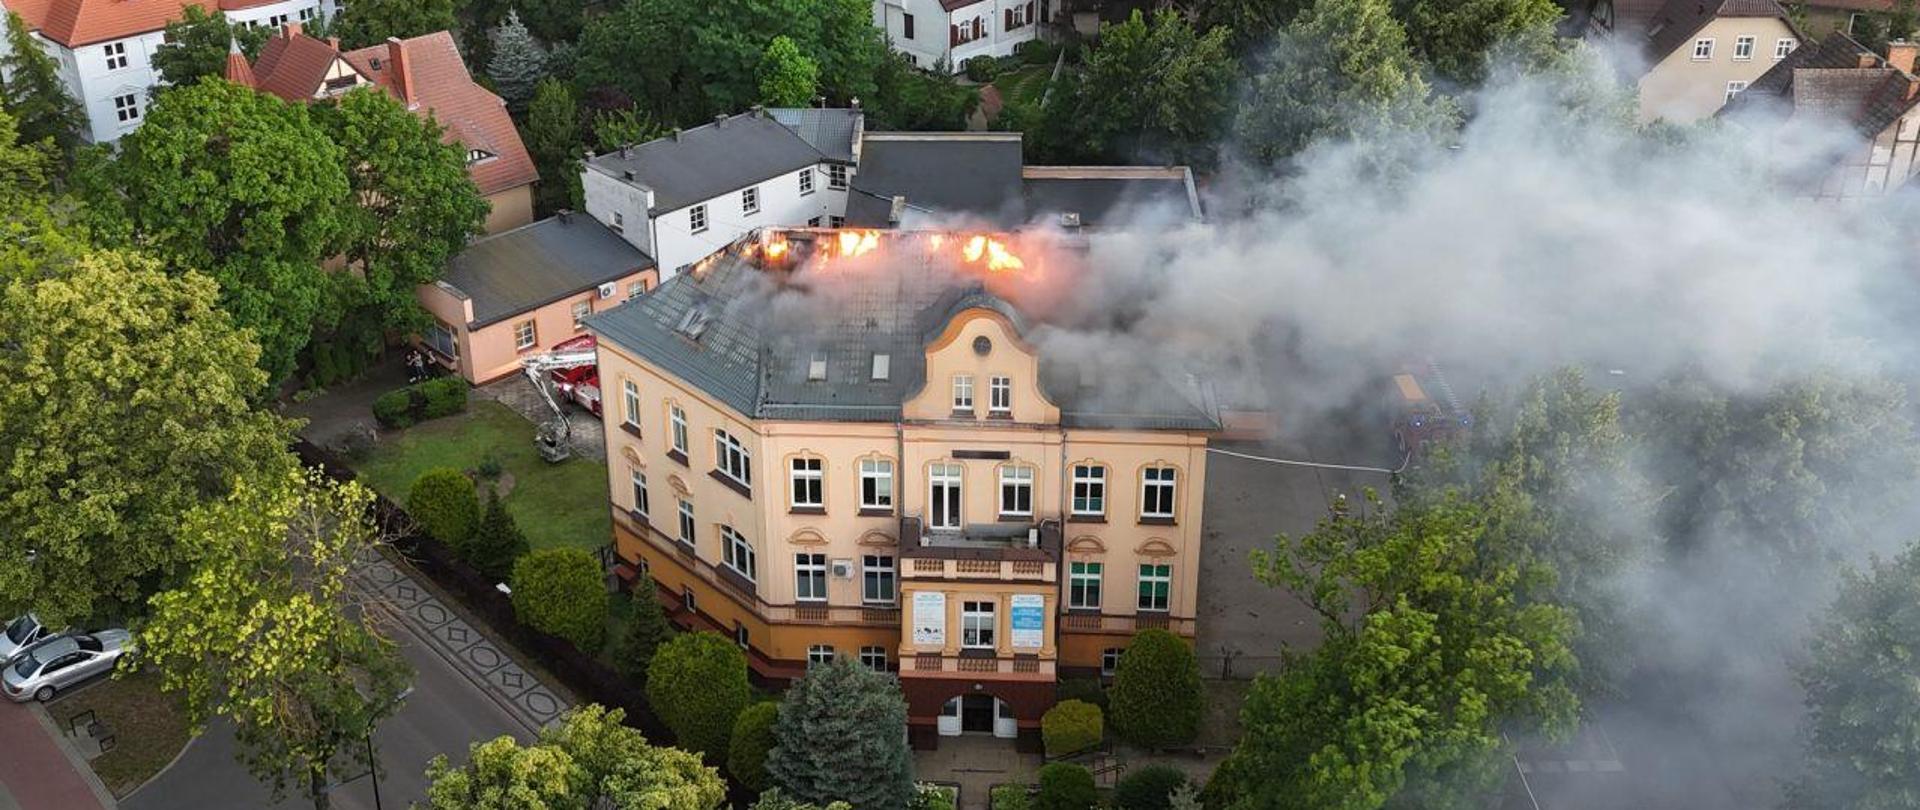 Zdjęcie wykonane z drona. Centralny punkt zdjęcia stanowi budynek. Wysoka kamienica, z dachu wydostaje się ogień.